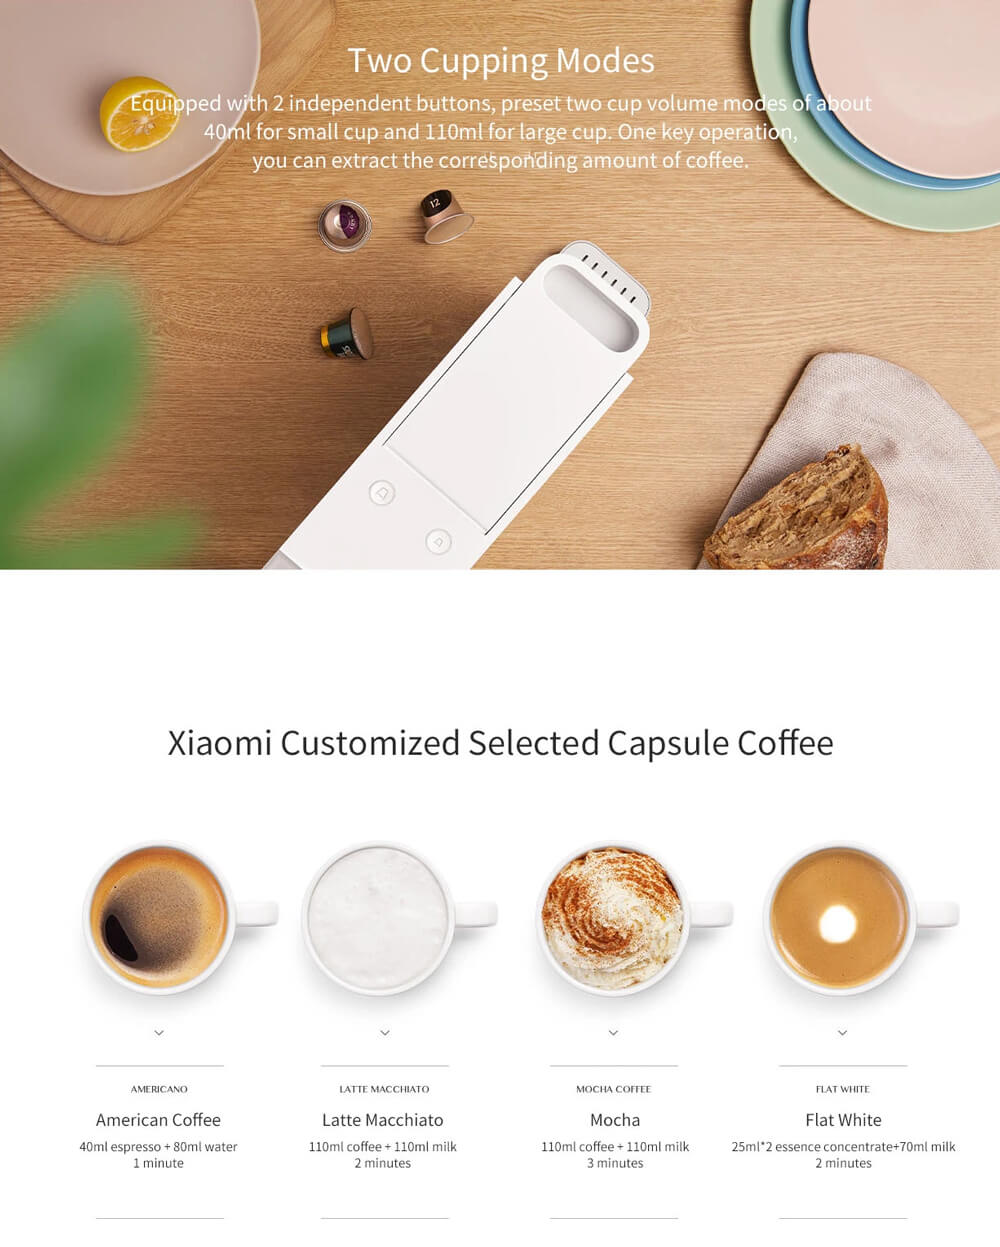 اسپرسو ساز کپسولی میجیا شیائومی S1301 - ‏Xiaomi Mijia S1301 Coffee Machine